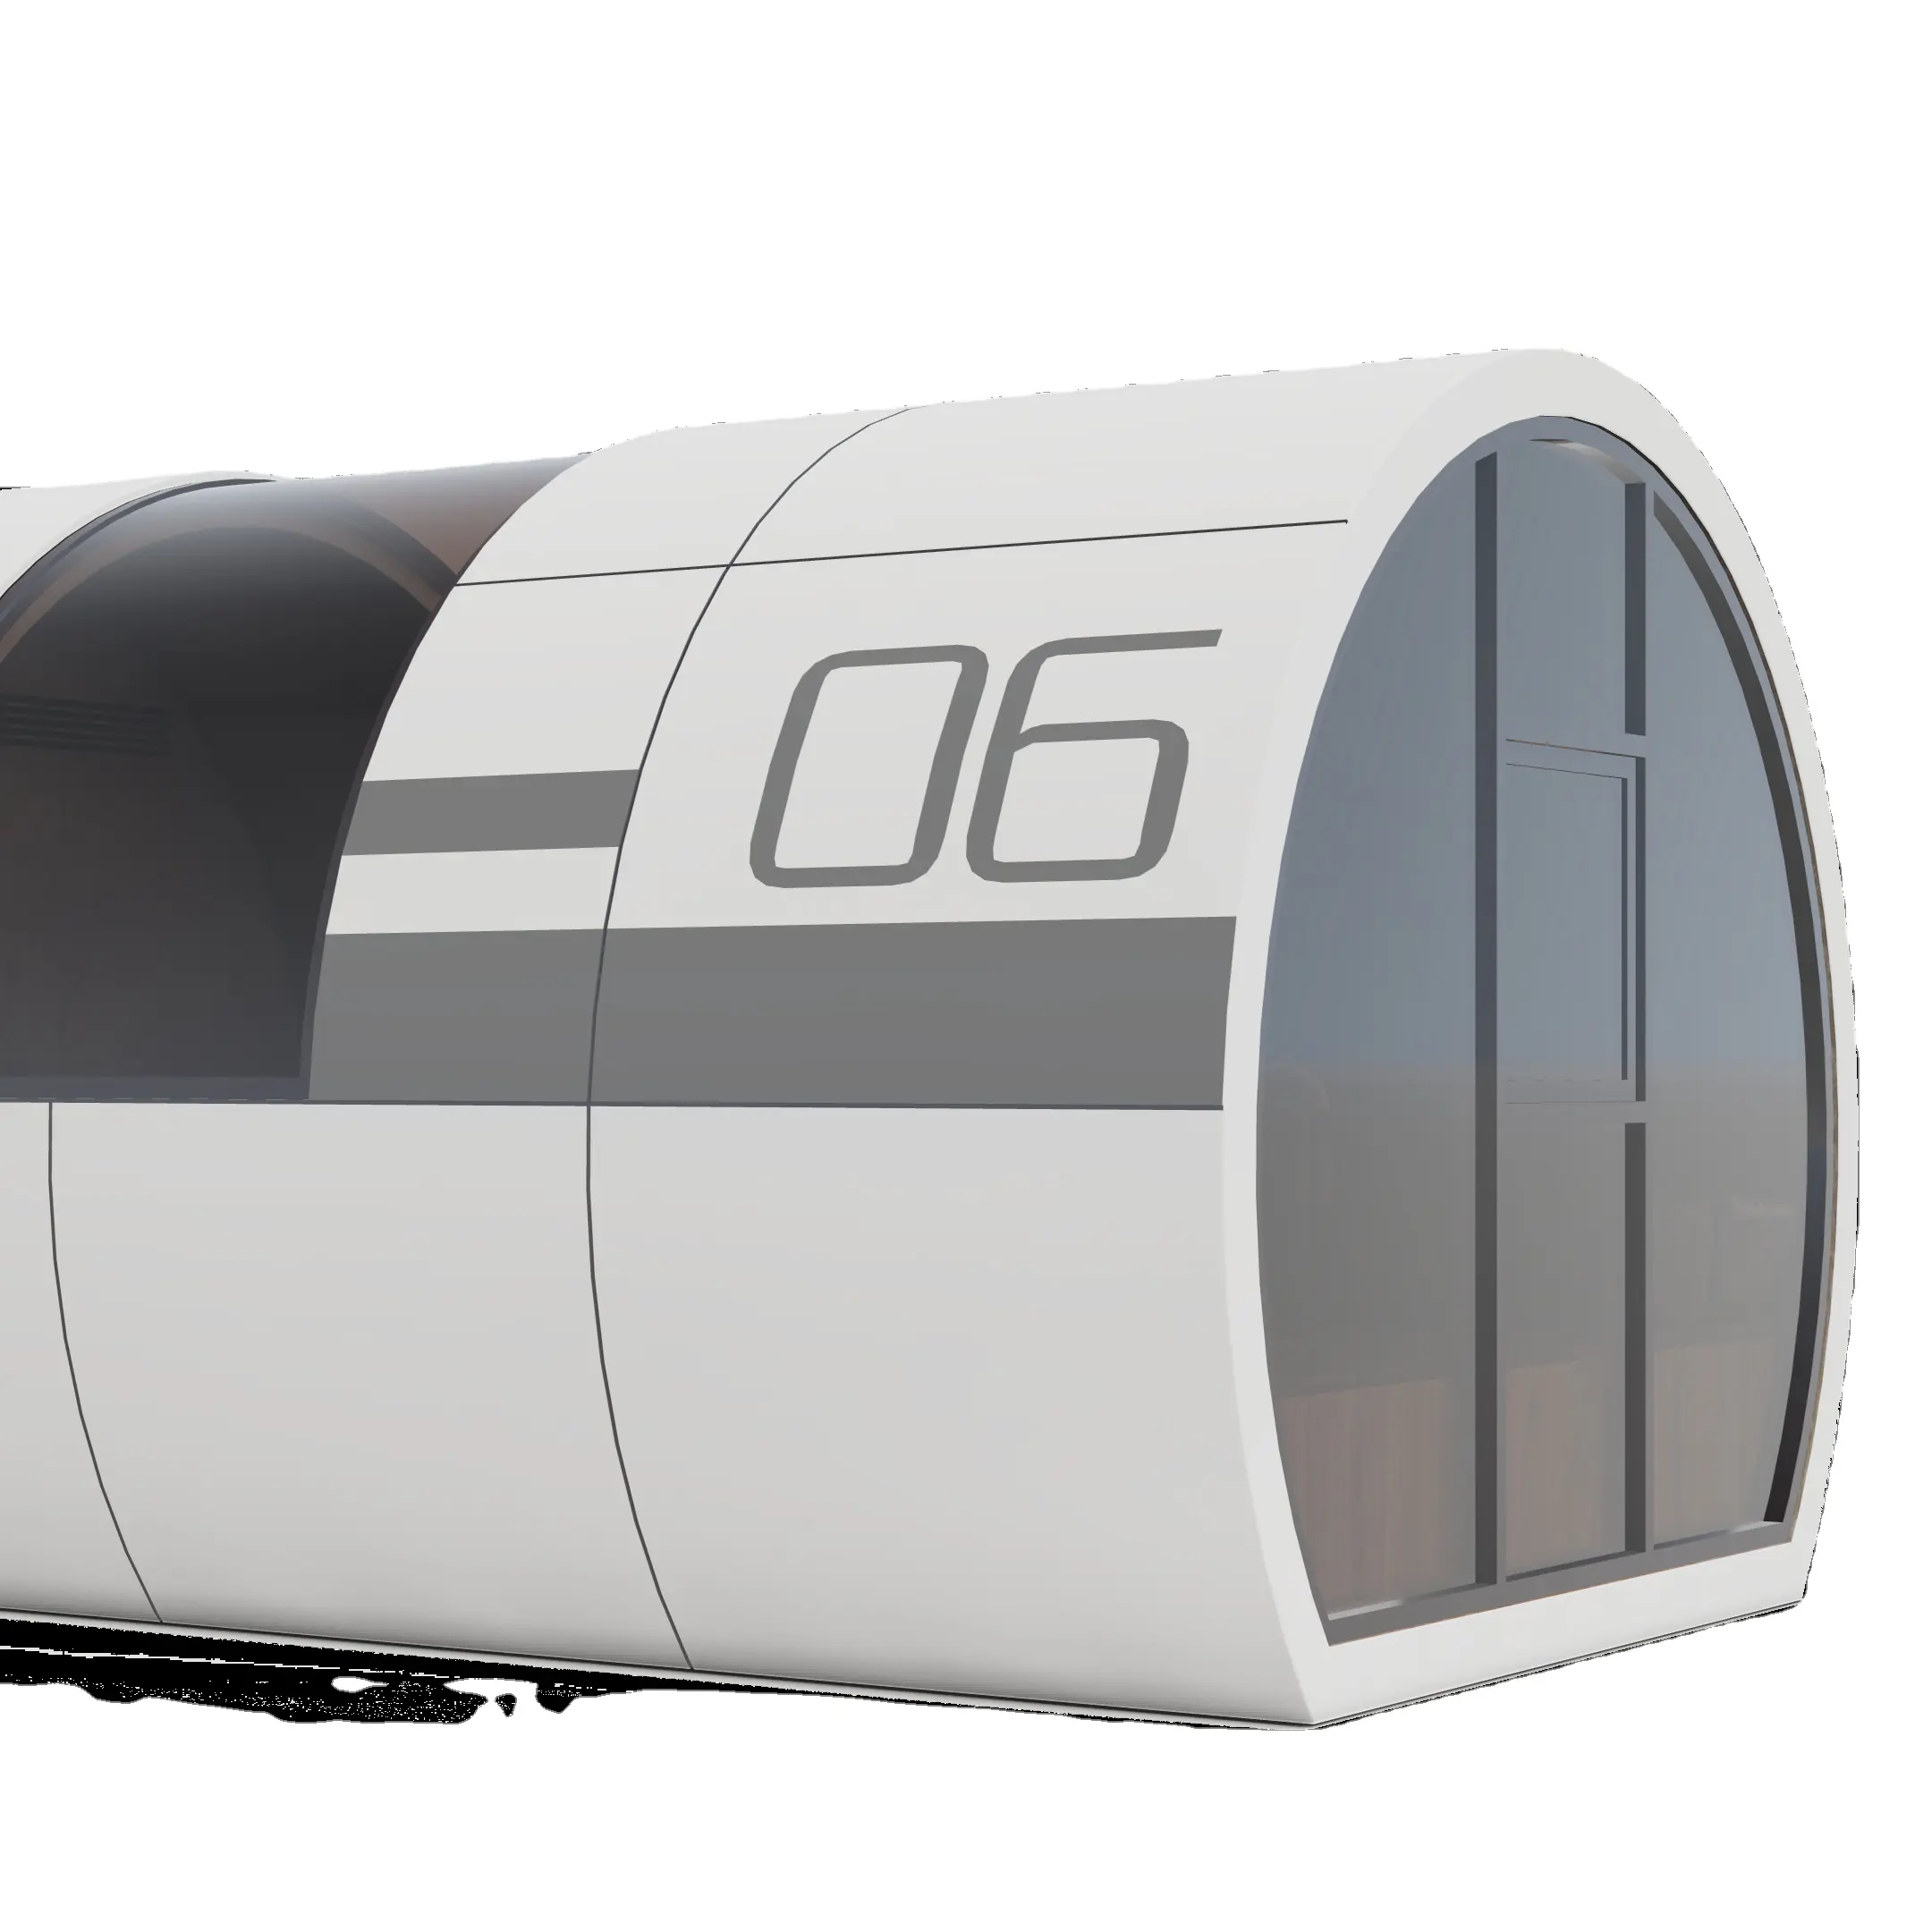 Petite maison capsule 27 m2 toit rond espace capsule maison avec cuisine quatre couches isolées anti-vibration murs extérieurs capsule